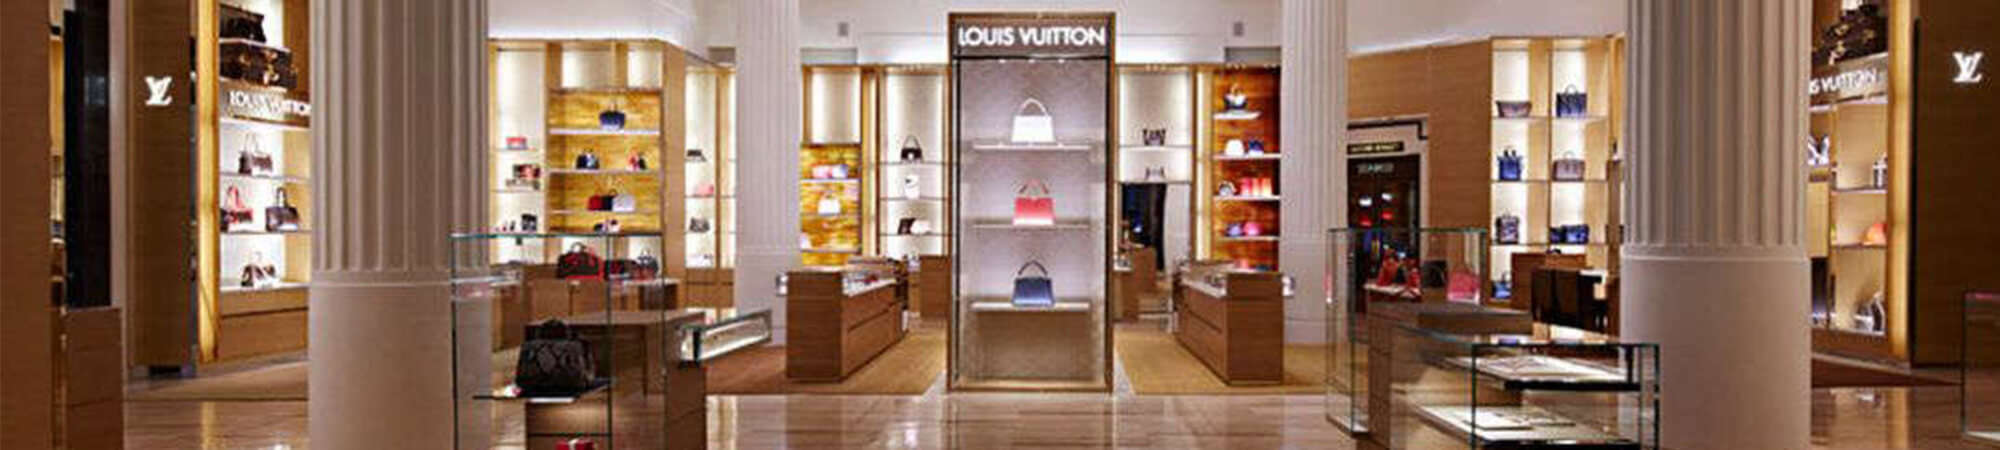 Louis Vuitton, London